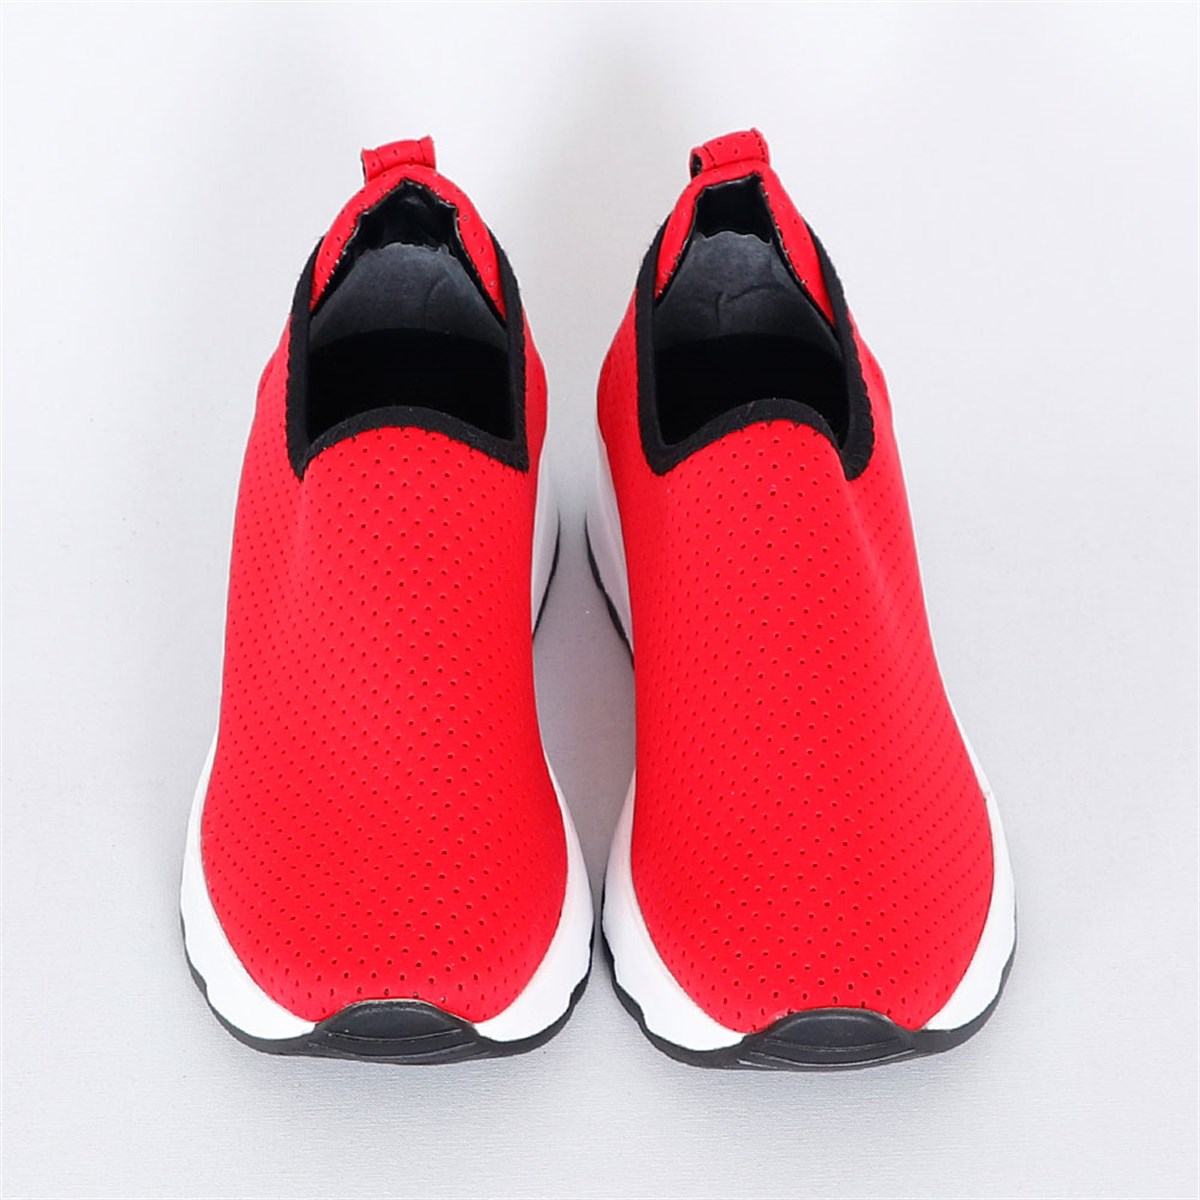 Kırmızı Düz Taban Fileli Kadın Spor Ayakkabı 3001 Fiyatı ve Modelleri